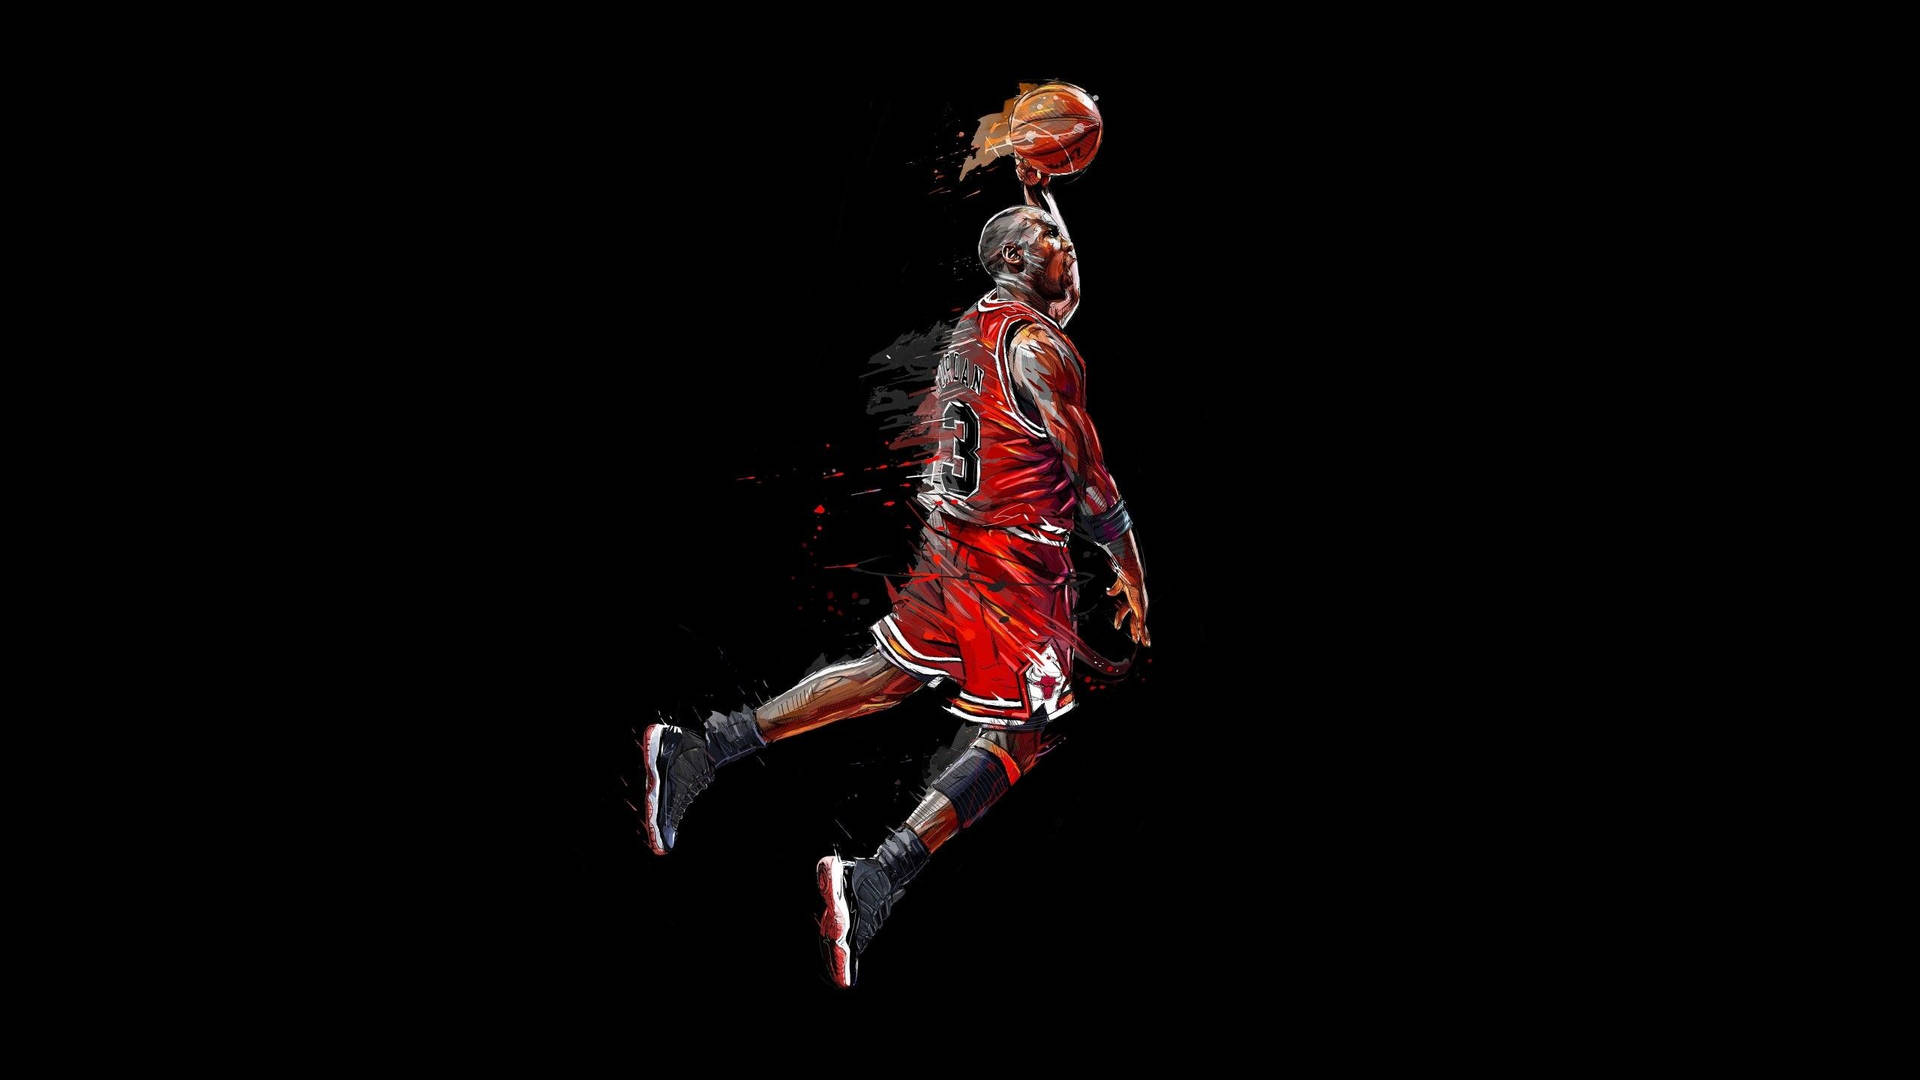 Michael Jordan Basketball Artwork Picture